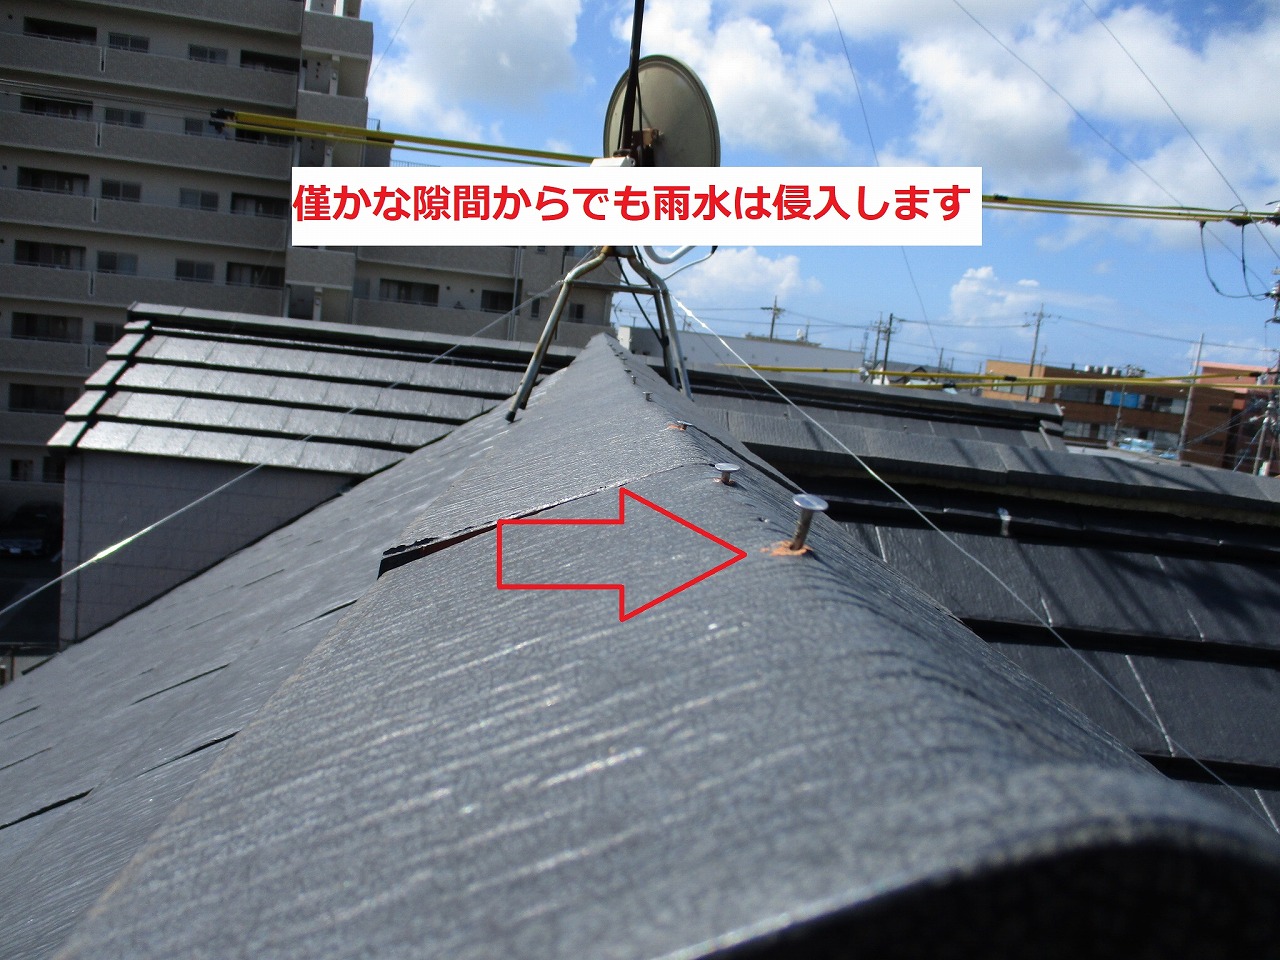 豊橋市富士見台にて棟瓦のビス固定、工事完了後の３か月点検に伺いました